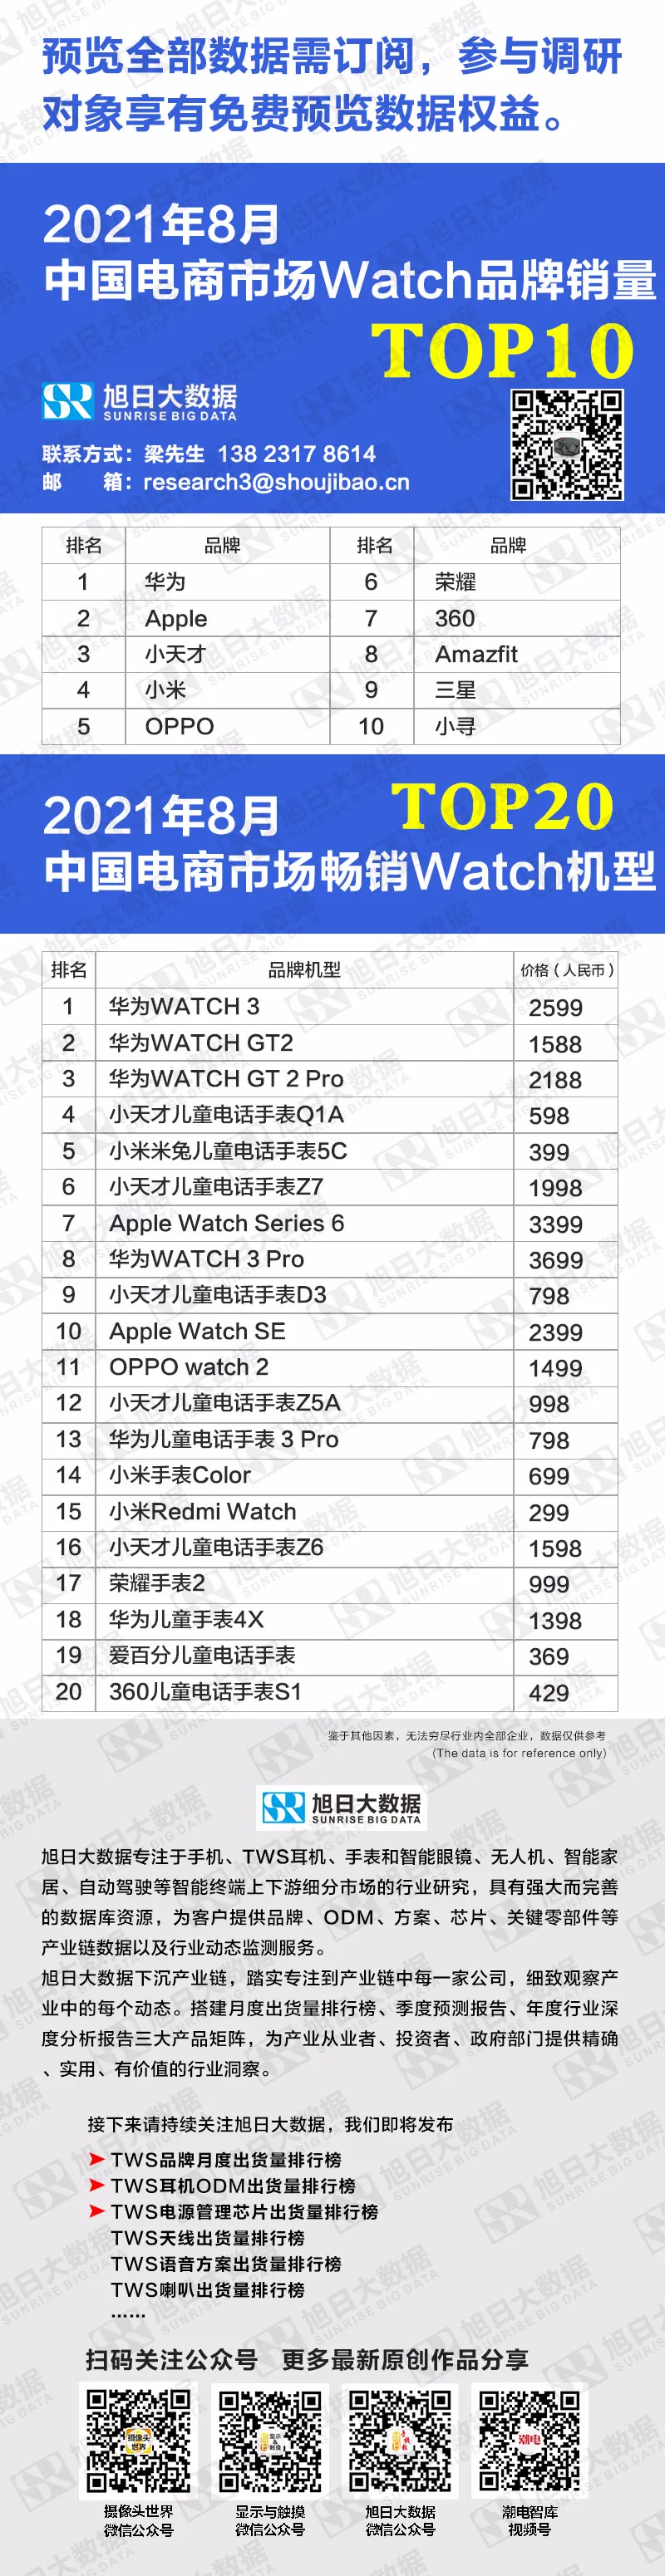 2021年8月中国电商市场watch品牌销量TOP10